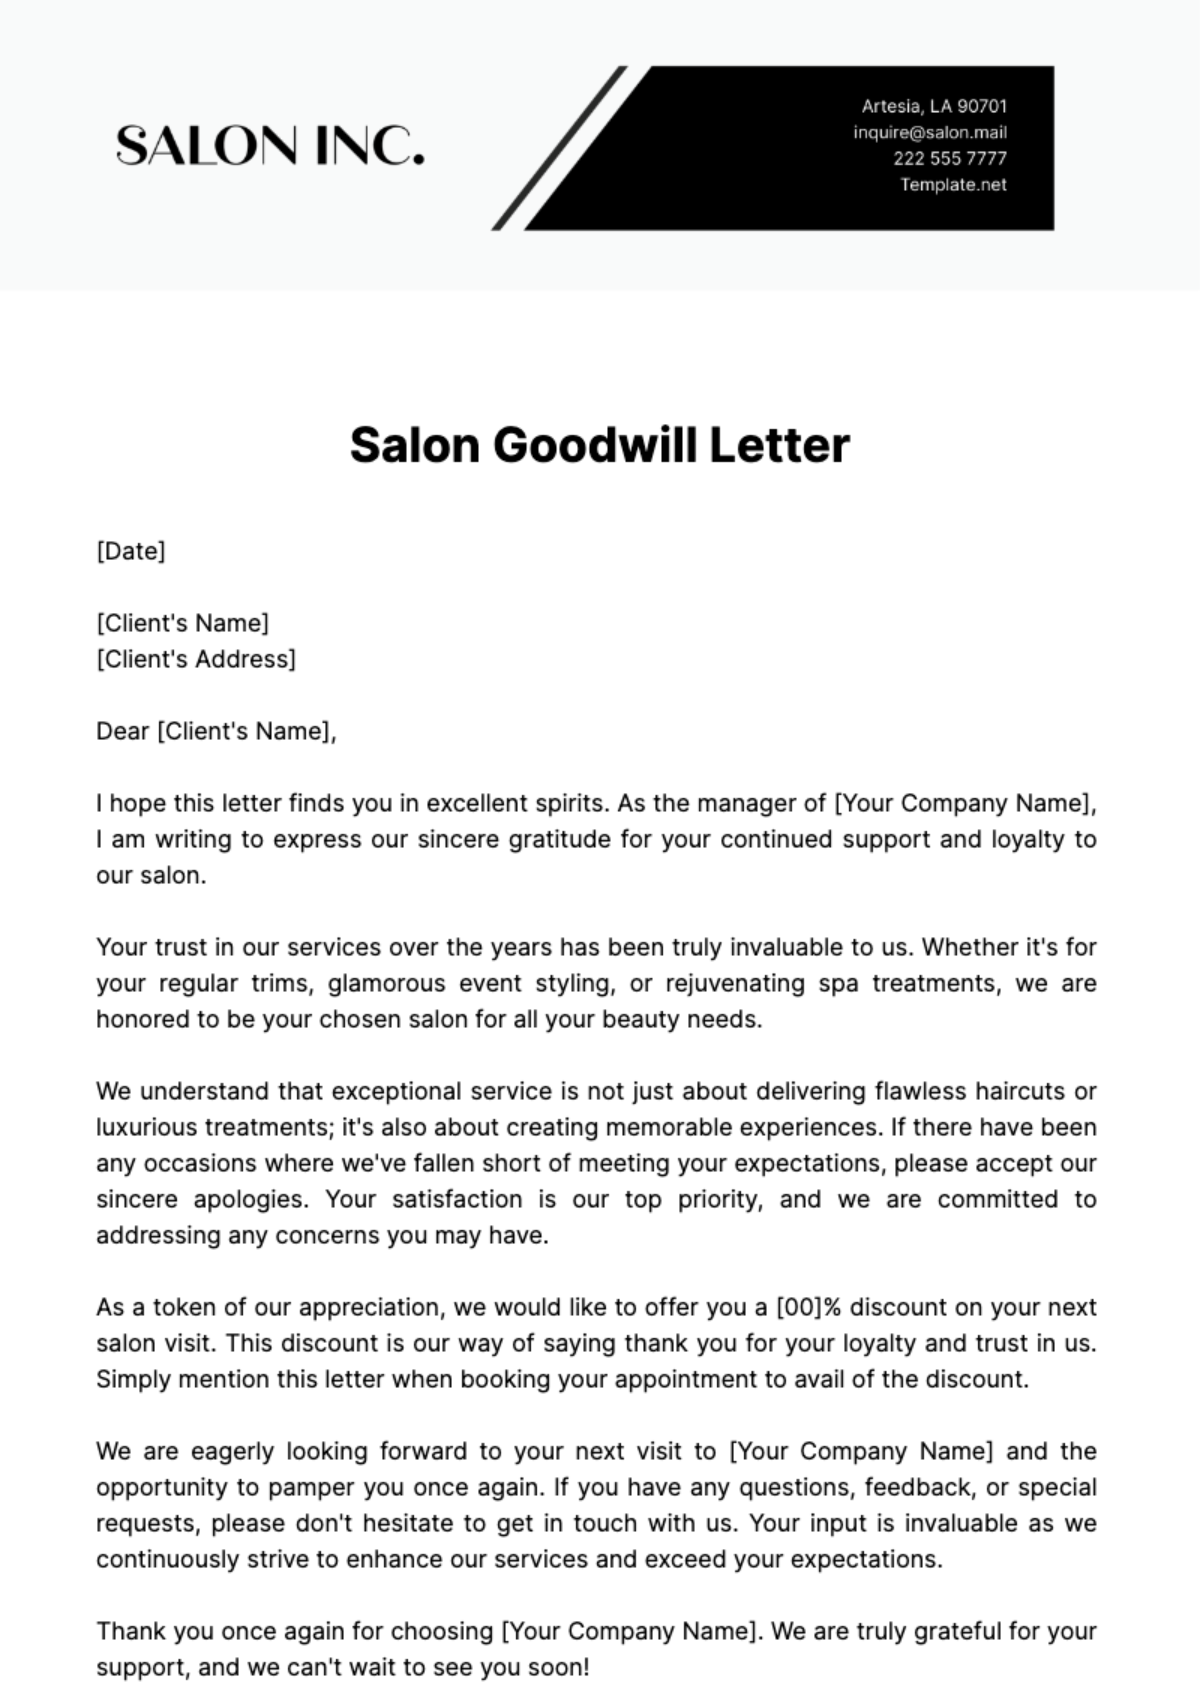 Salon Goodwill Letter Template